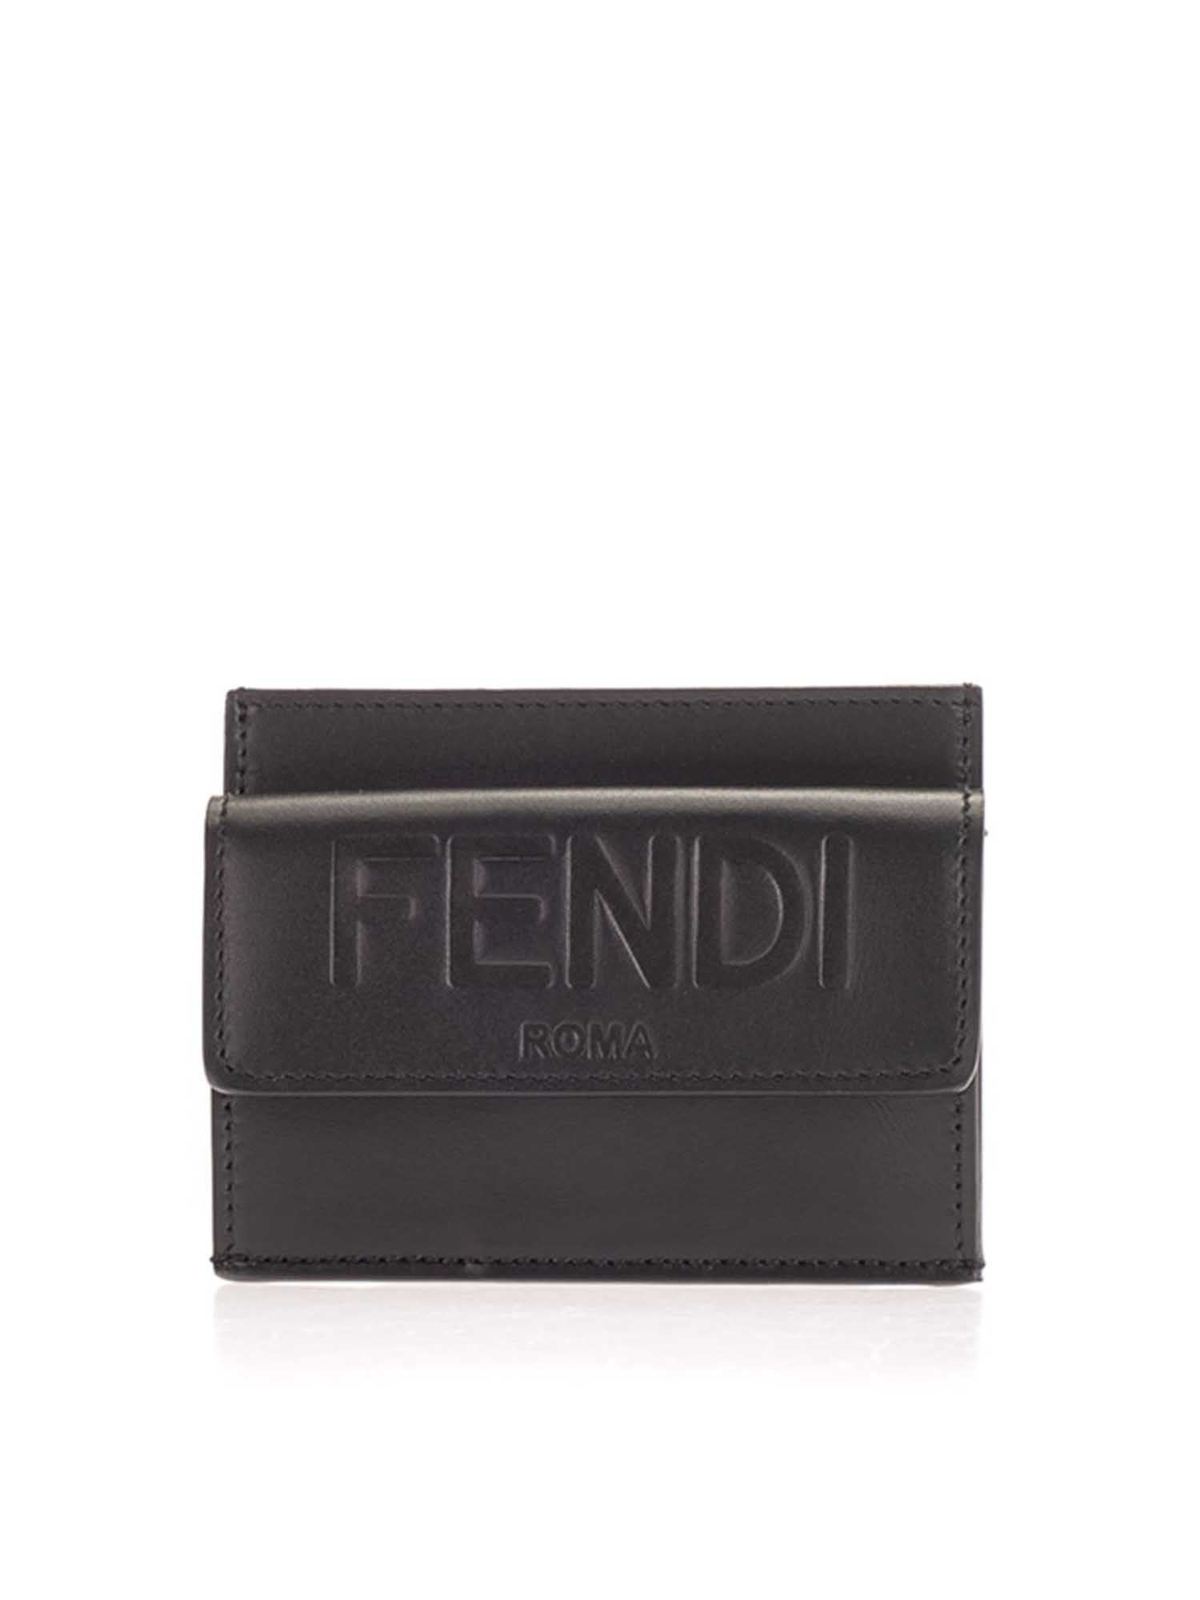 FENDI LOGO CARD HOLDER IN BLACK